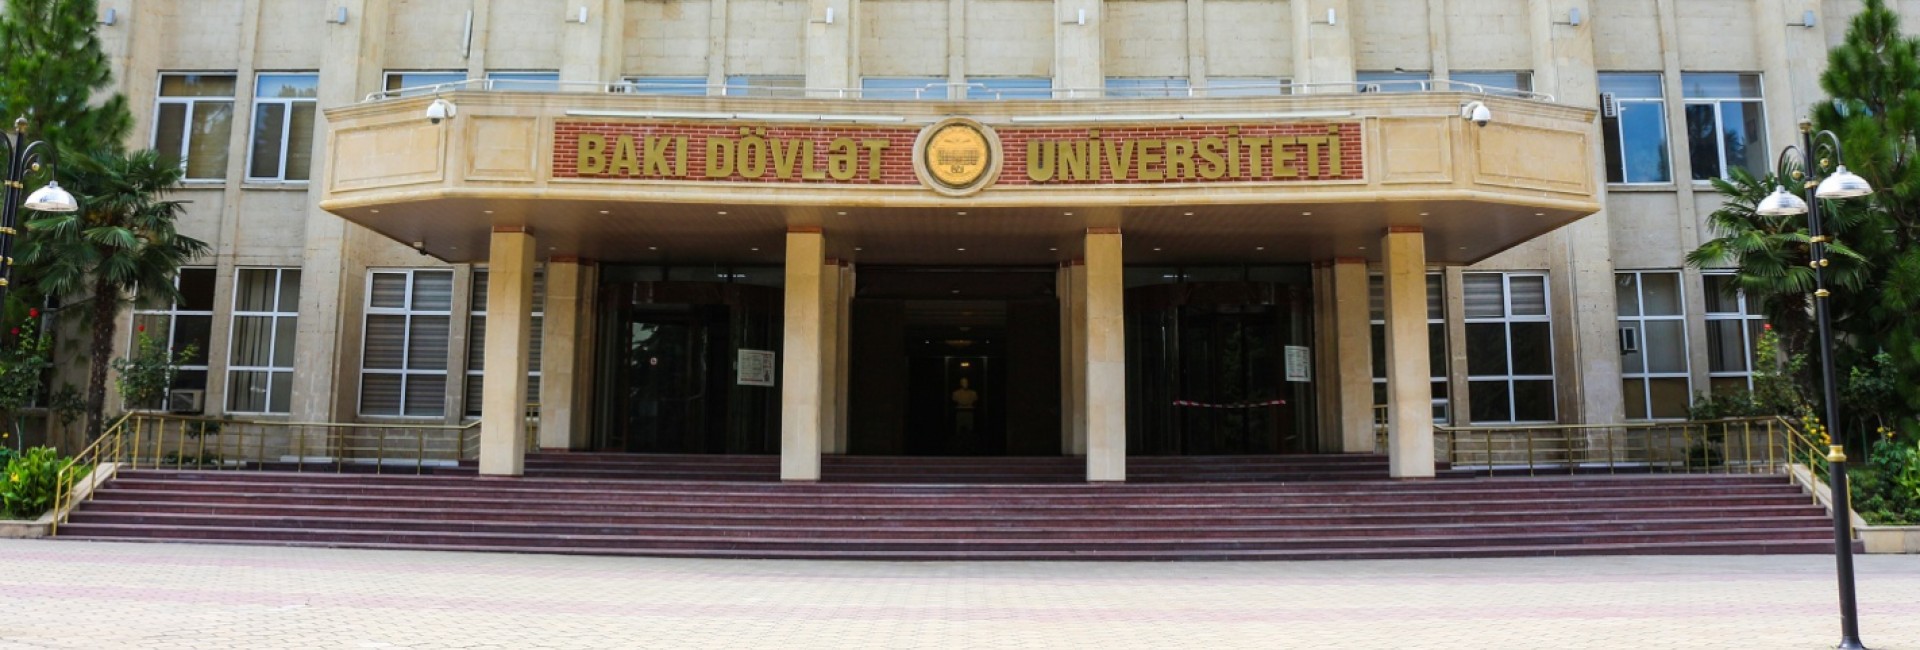 Universitet